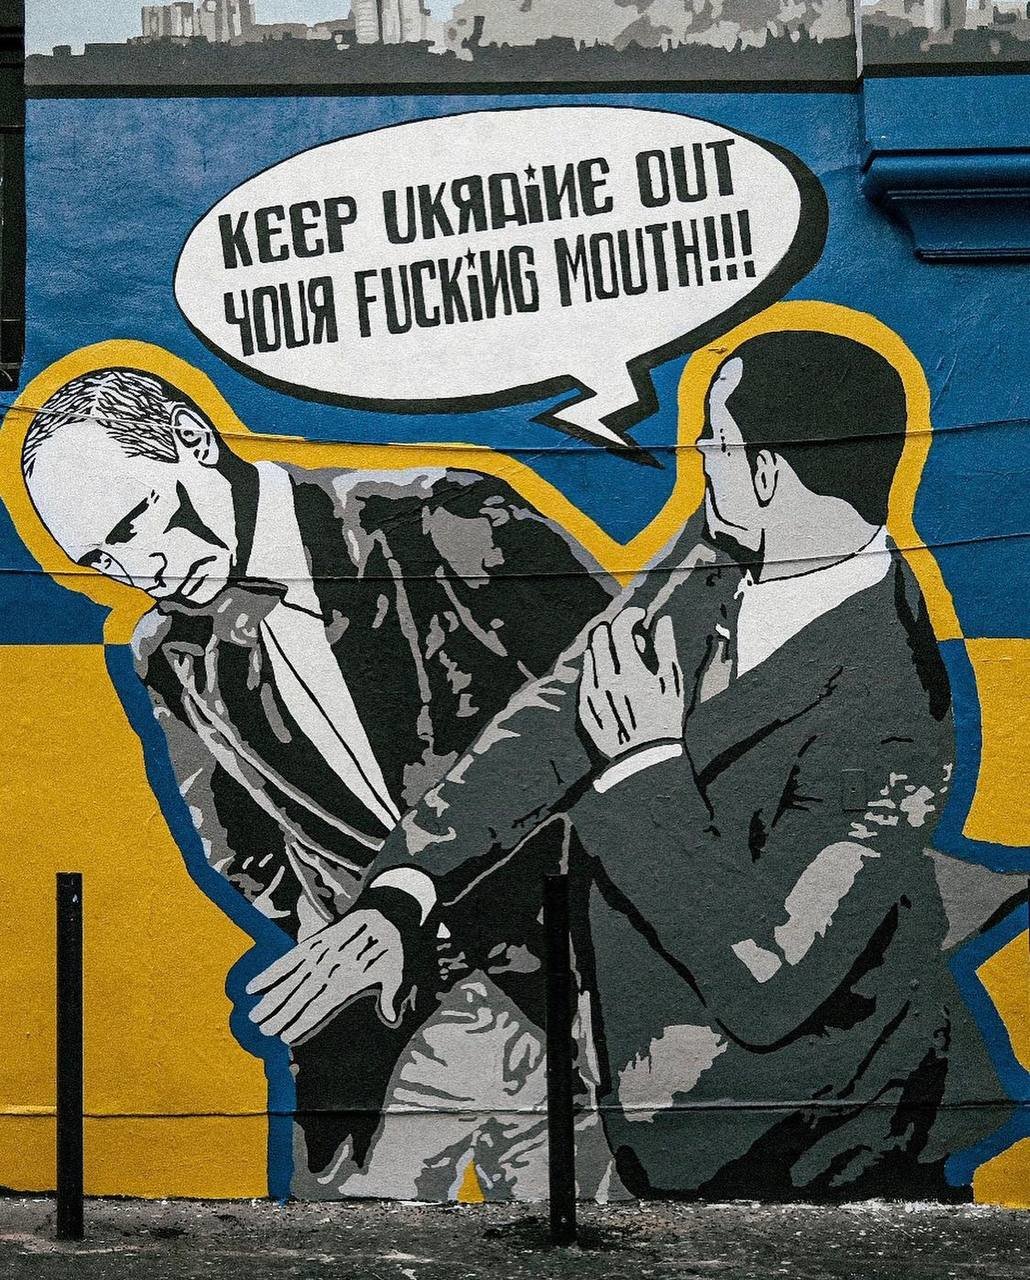 Графити изобразяващо сцена в която Уил Смит шамаросва руския президент